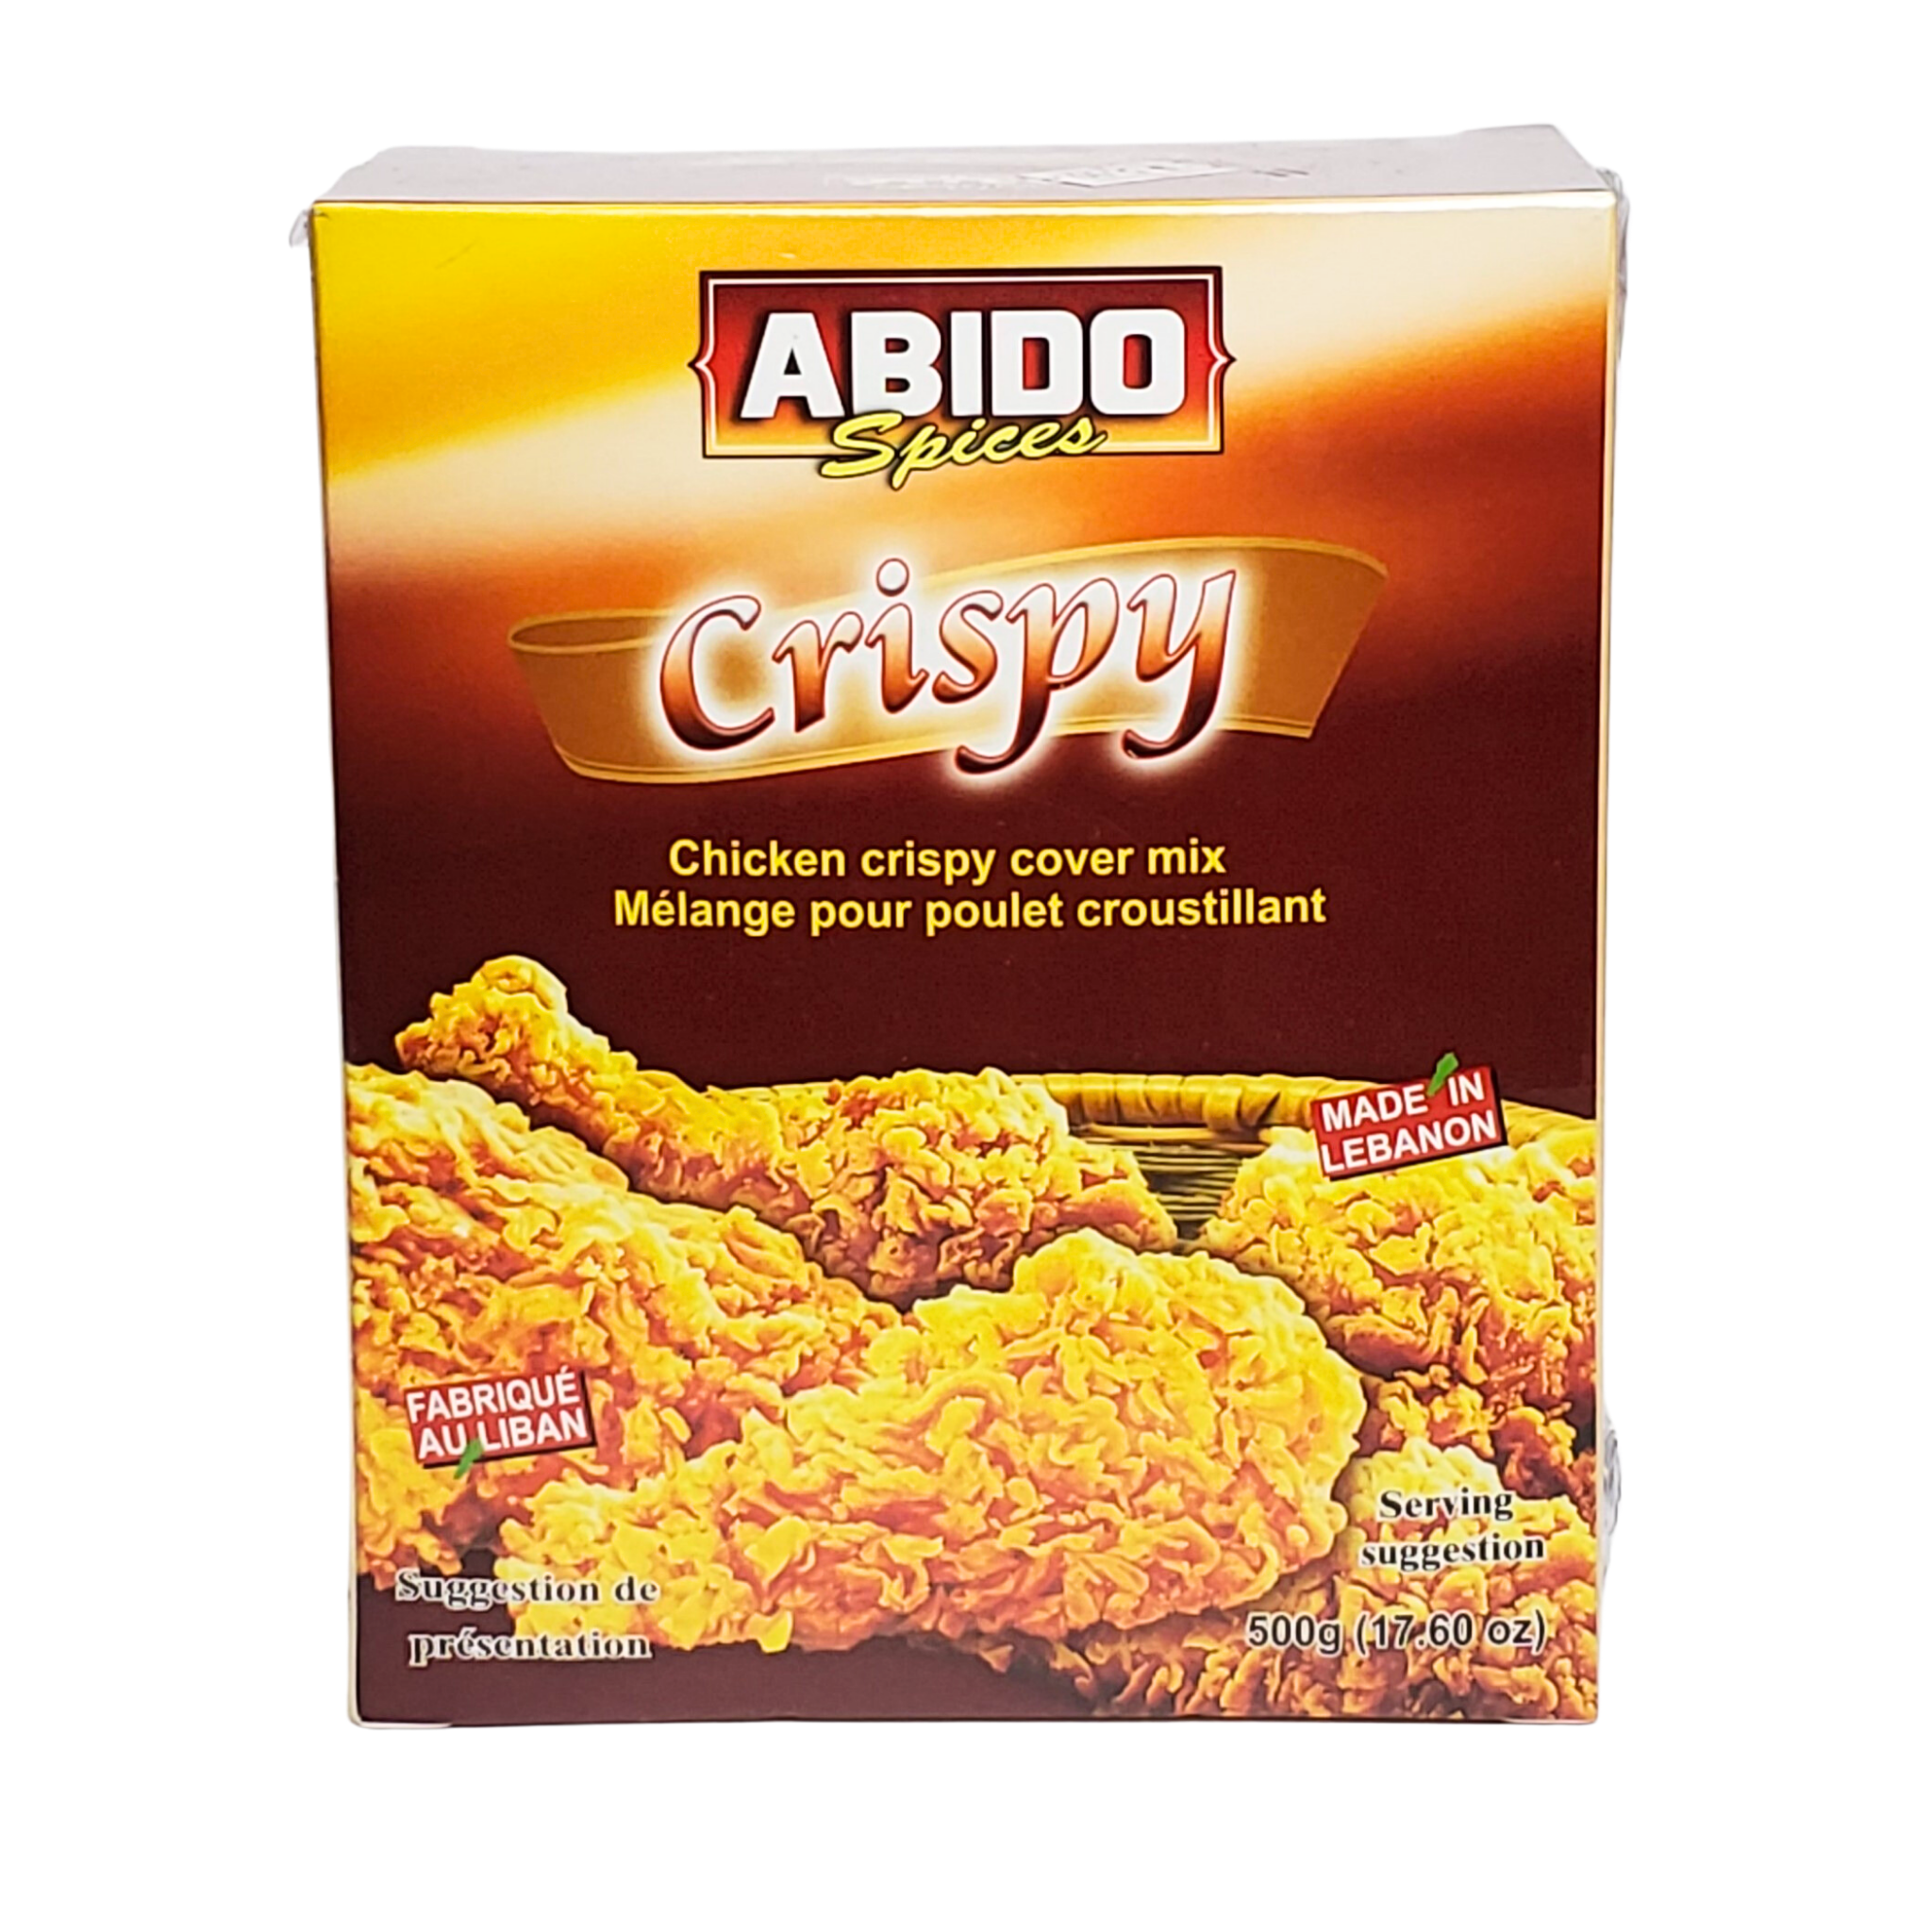 ABIDO spices Chicken crispy cover mix 500g